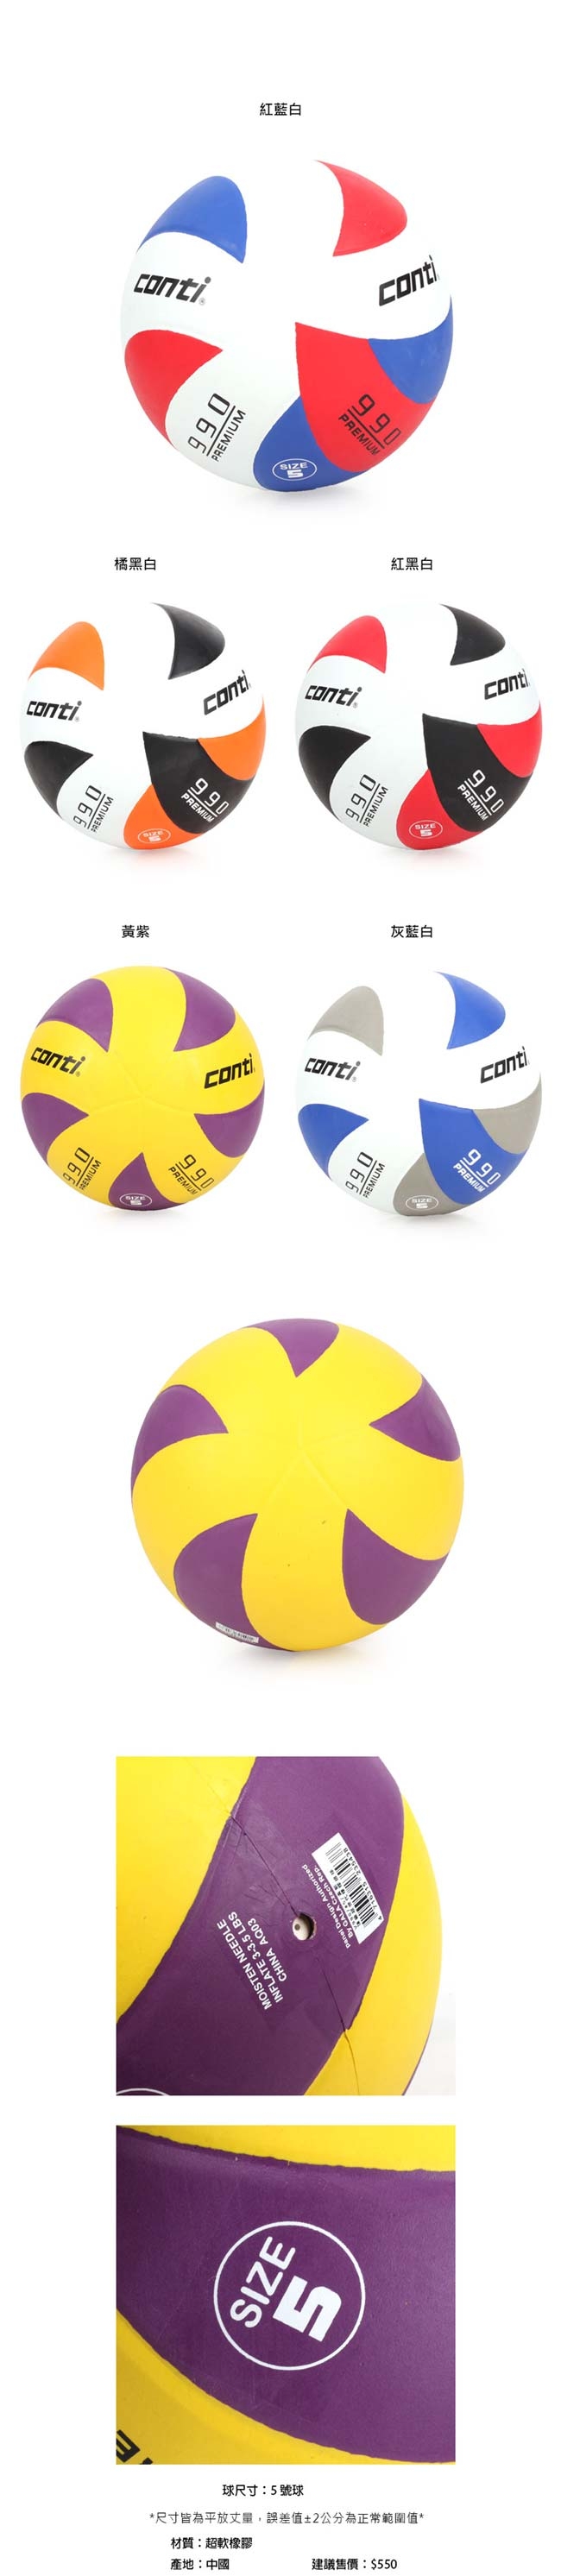 conti 5號頂級超世代橡膠排球 CONTI 黃紫